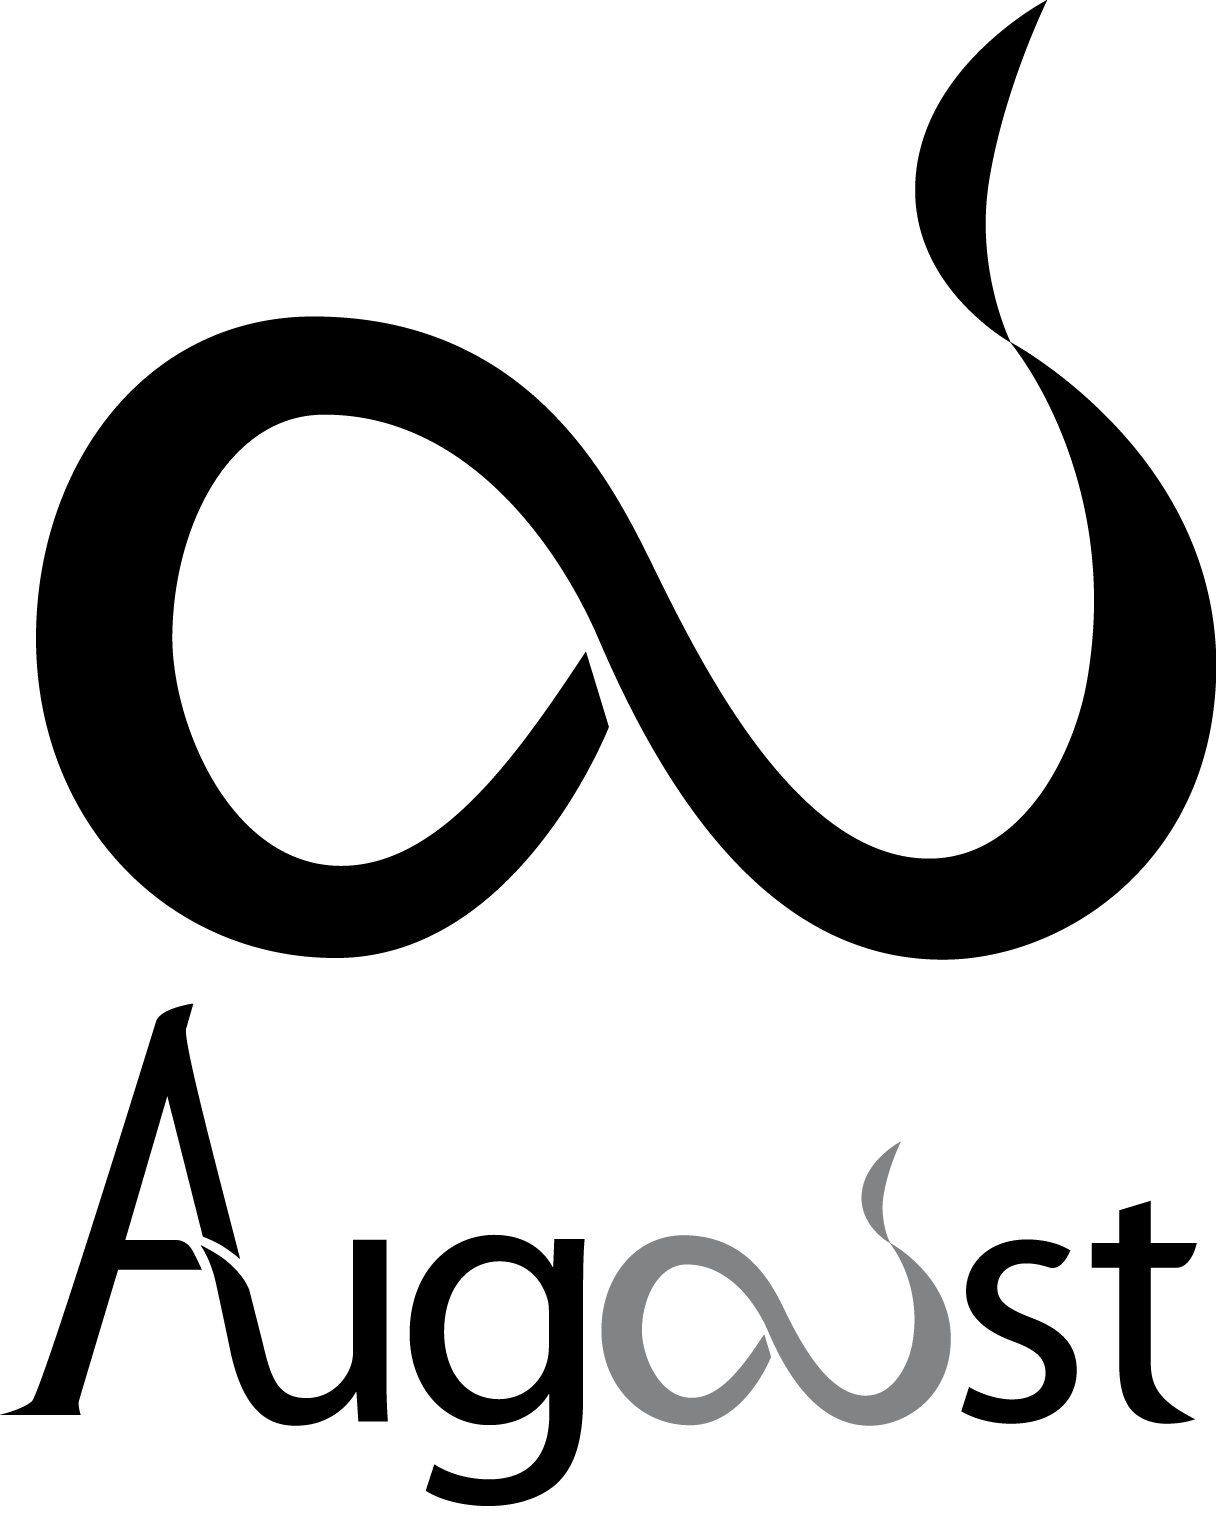 Logo Augoust